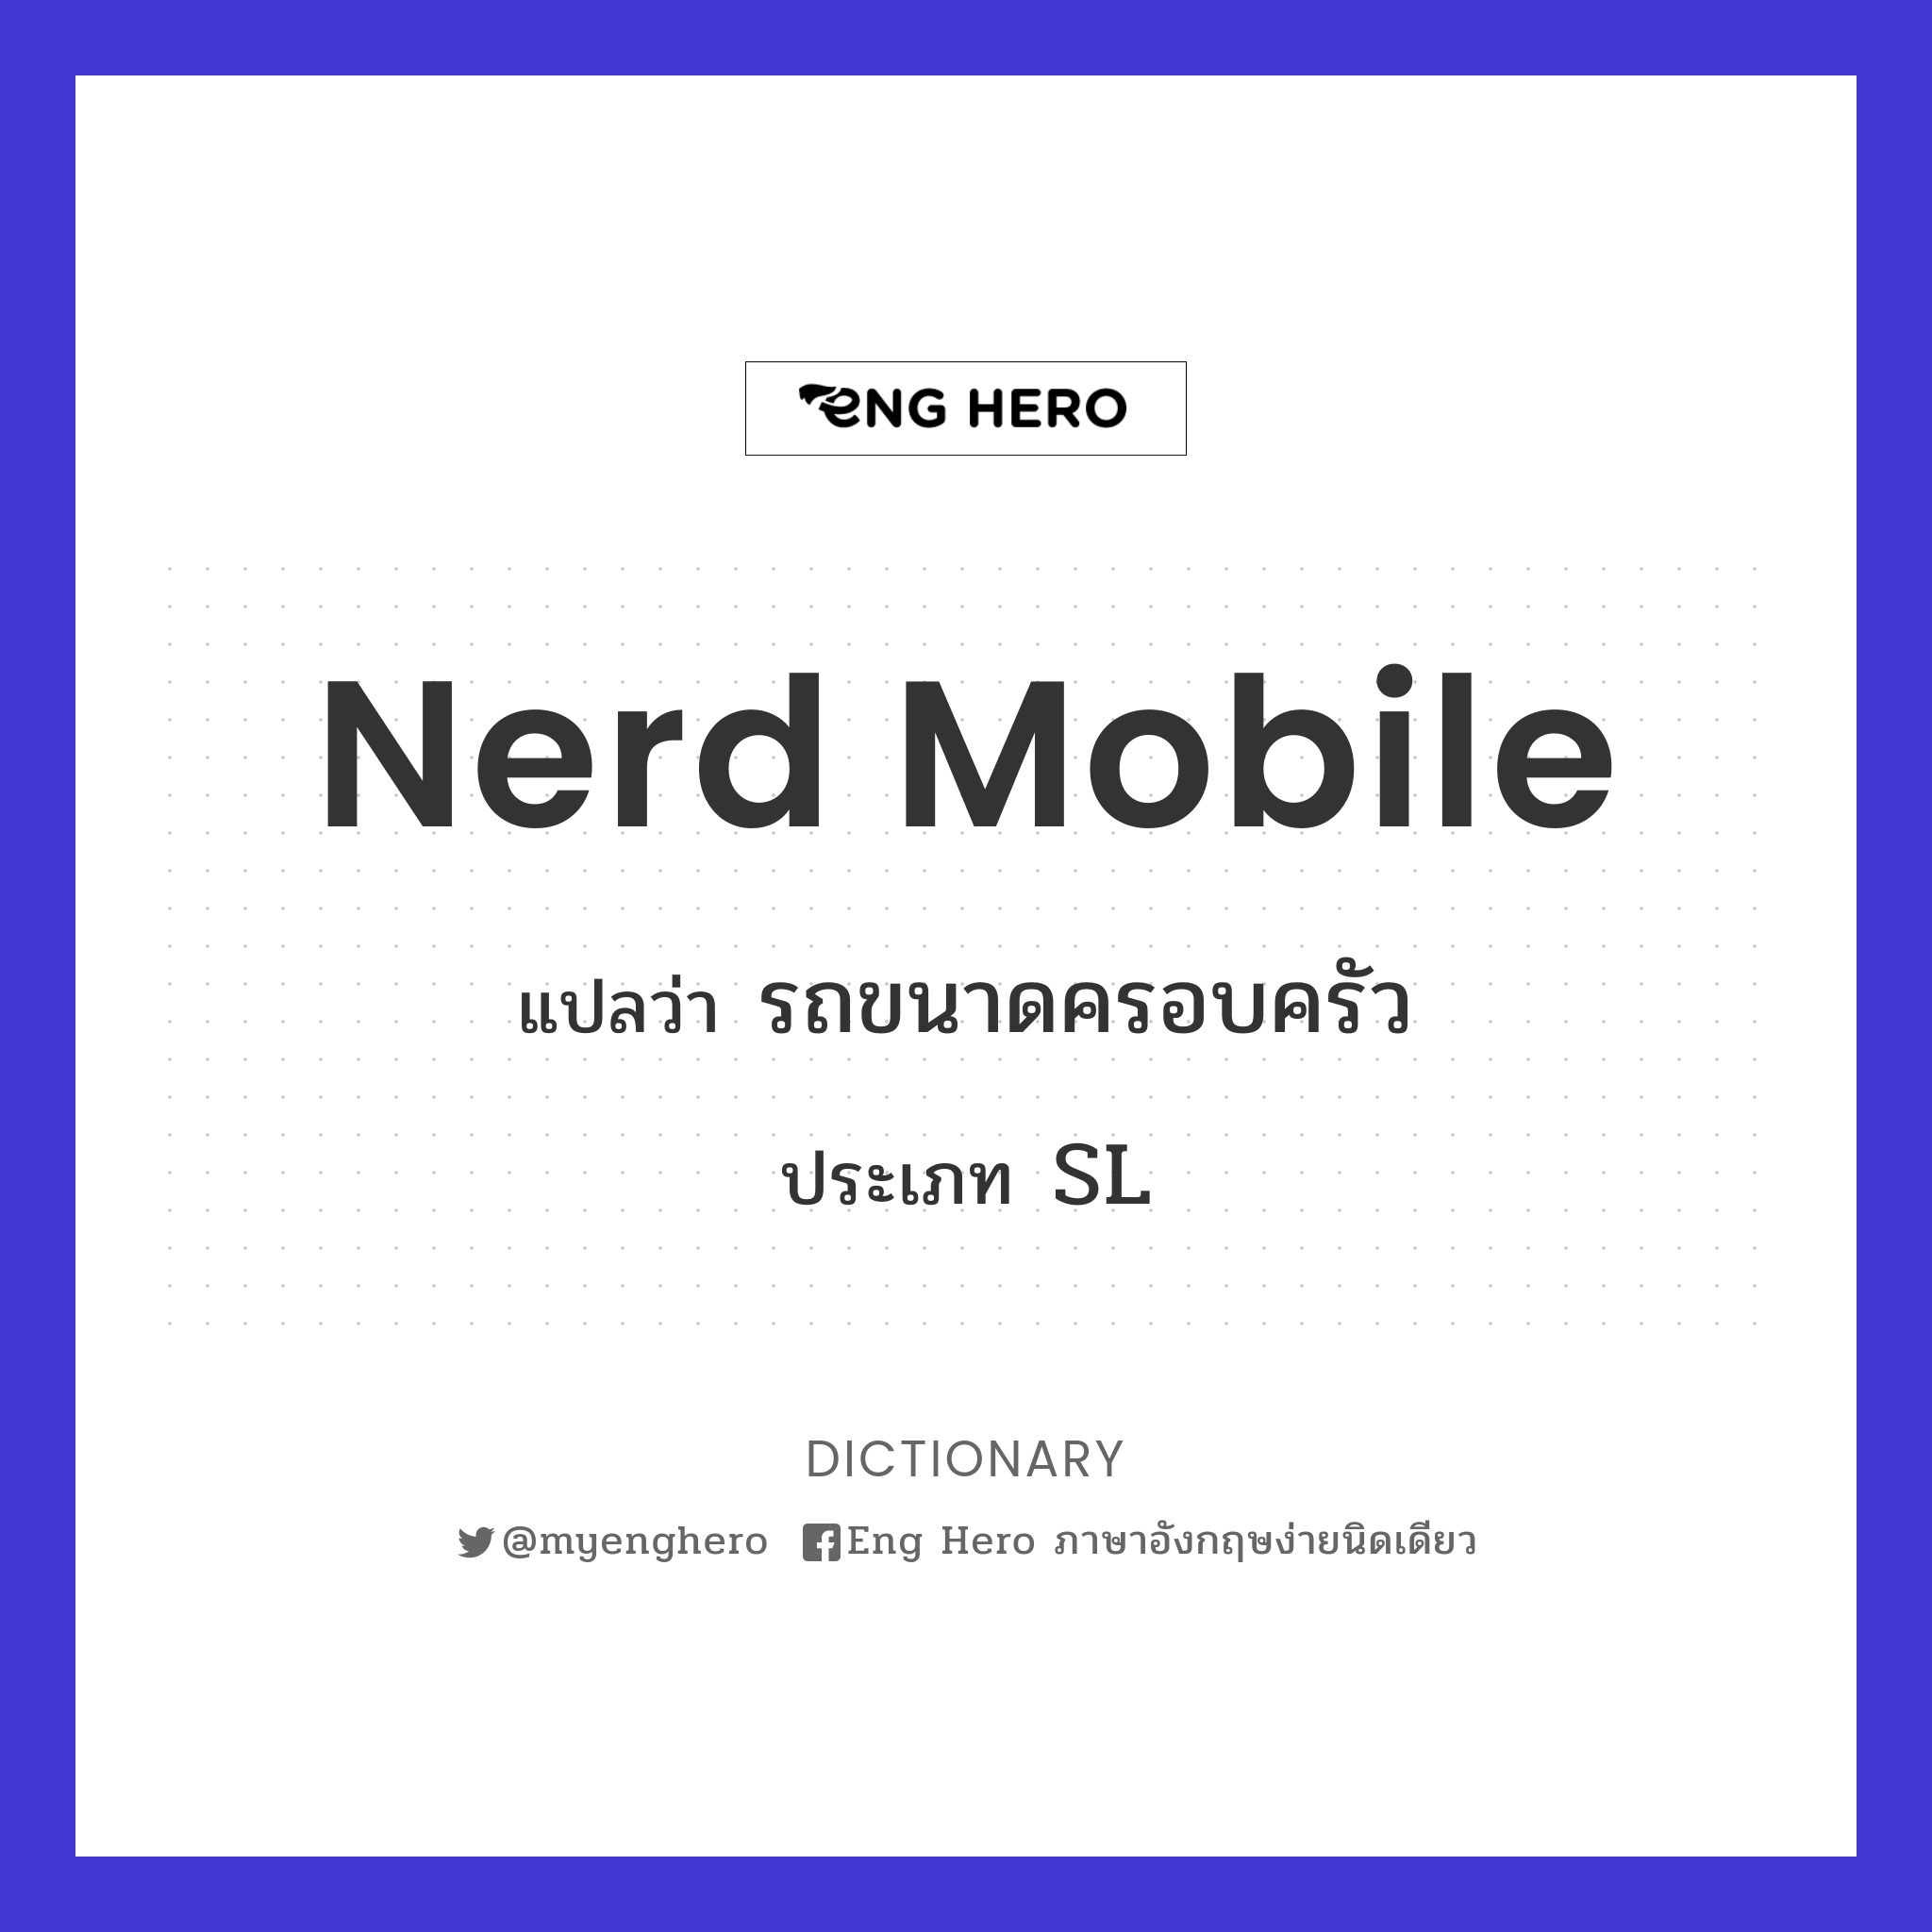 nerd mobile